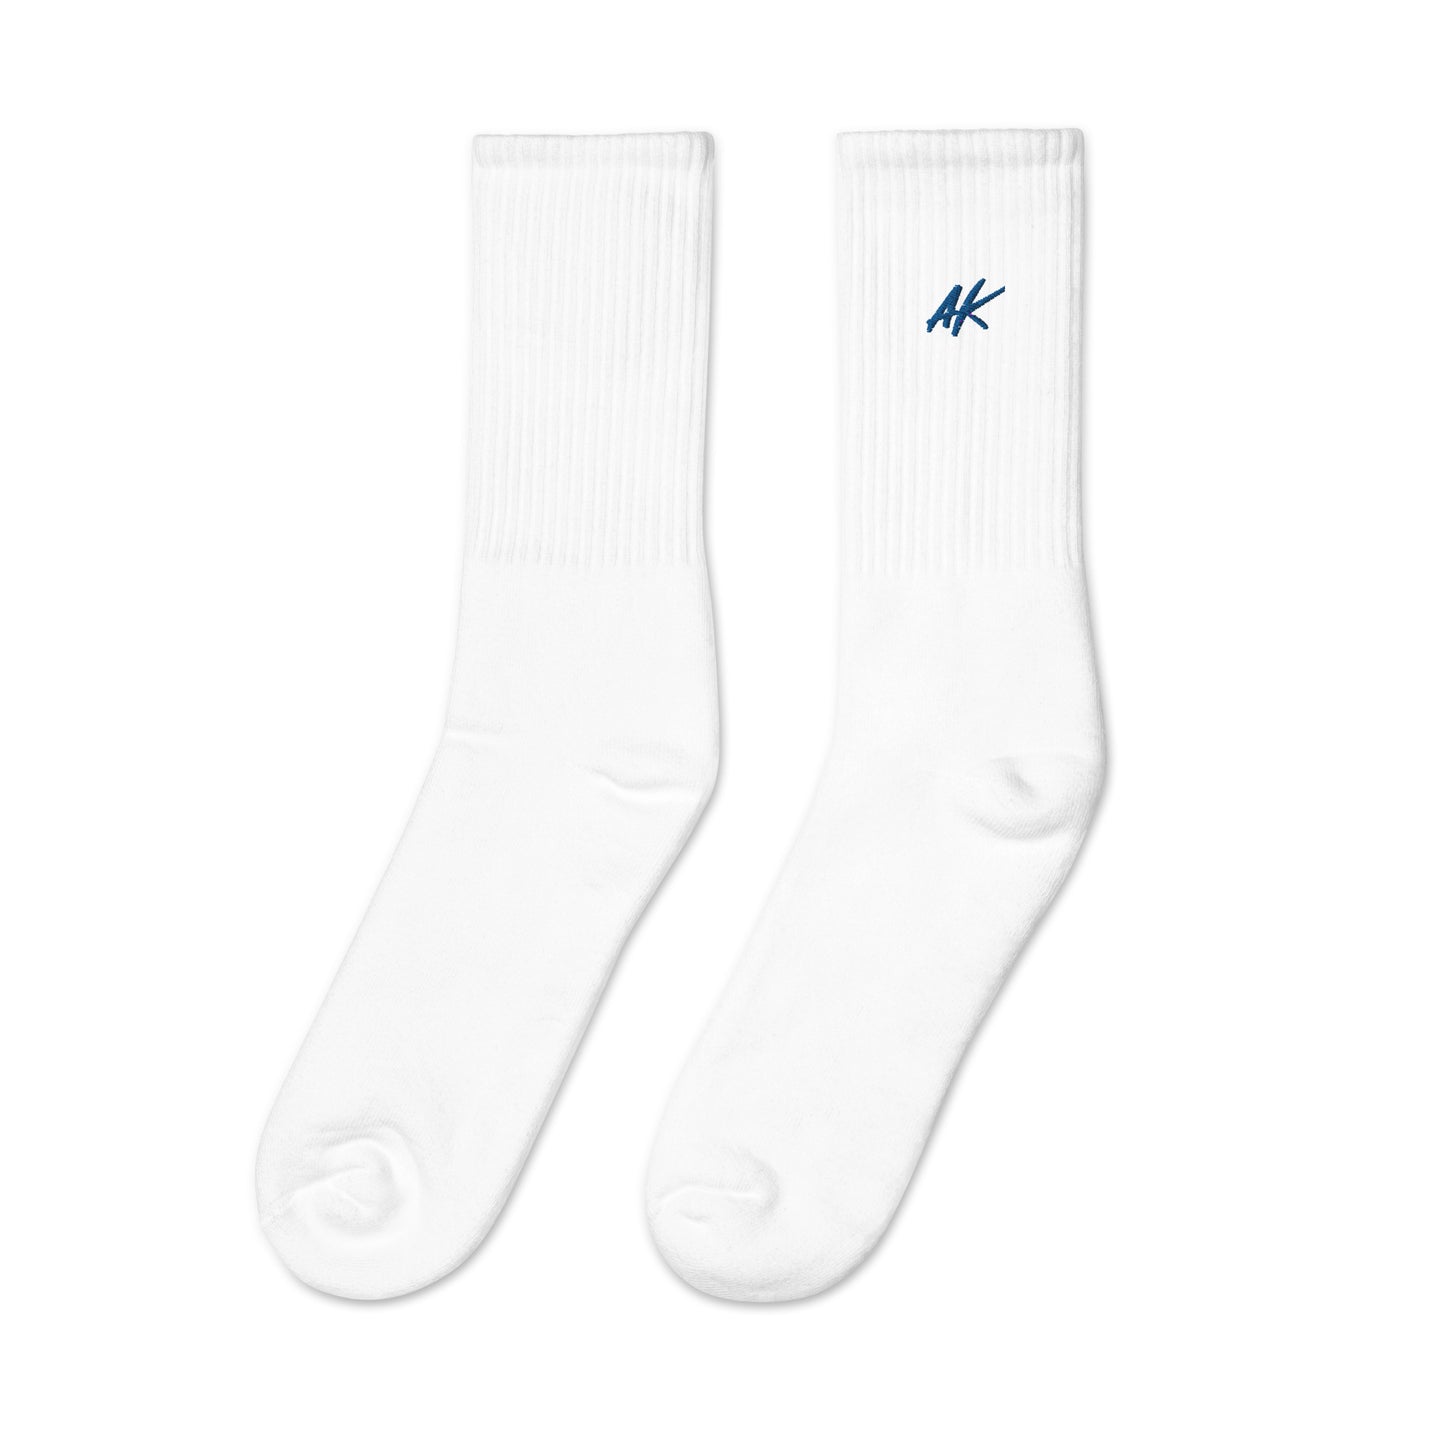 AK socks (blue)